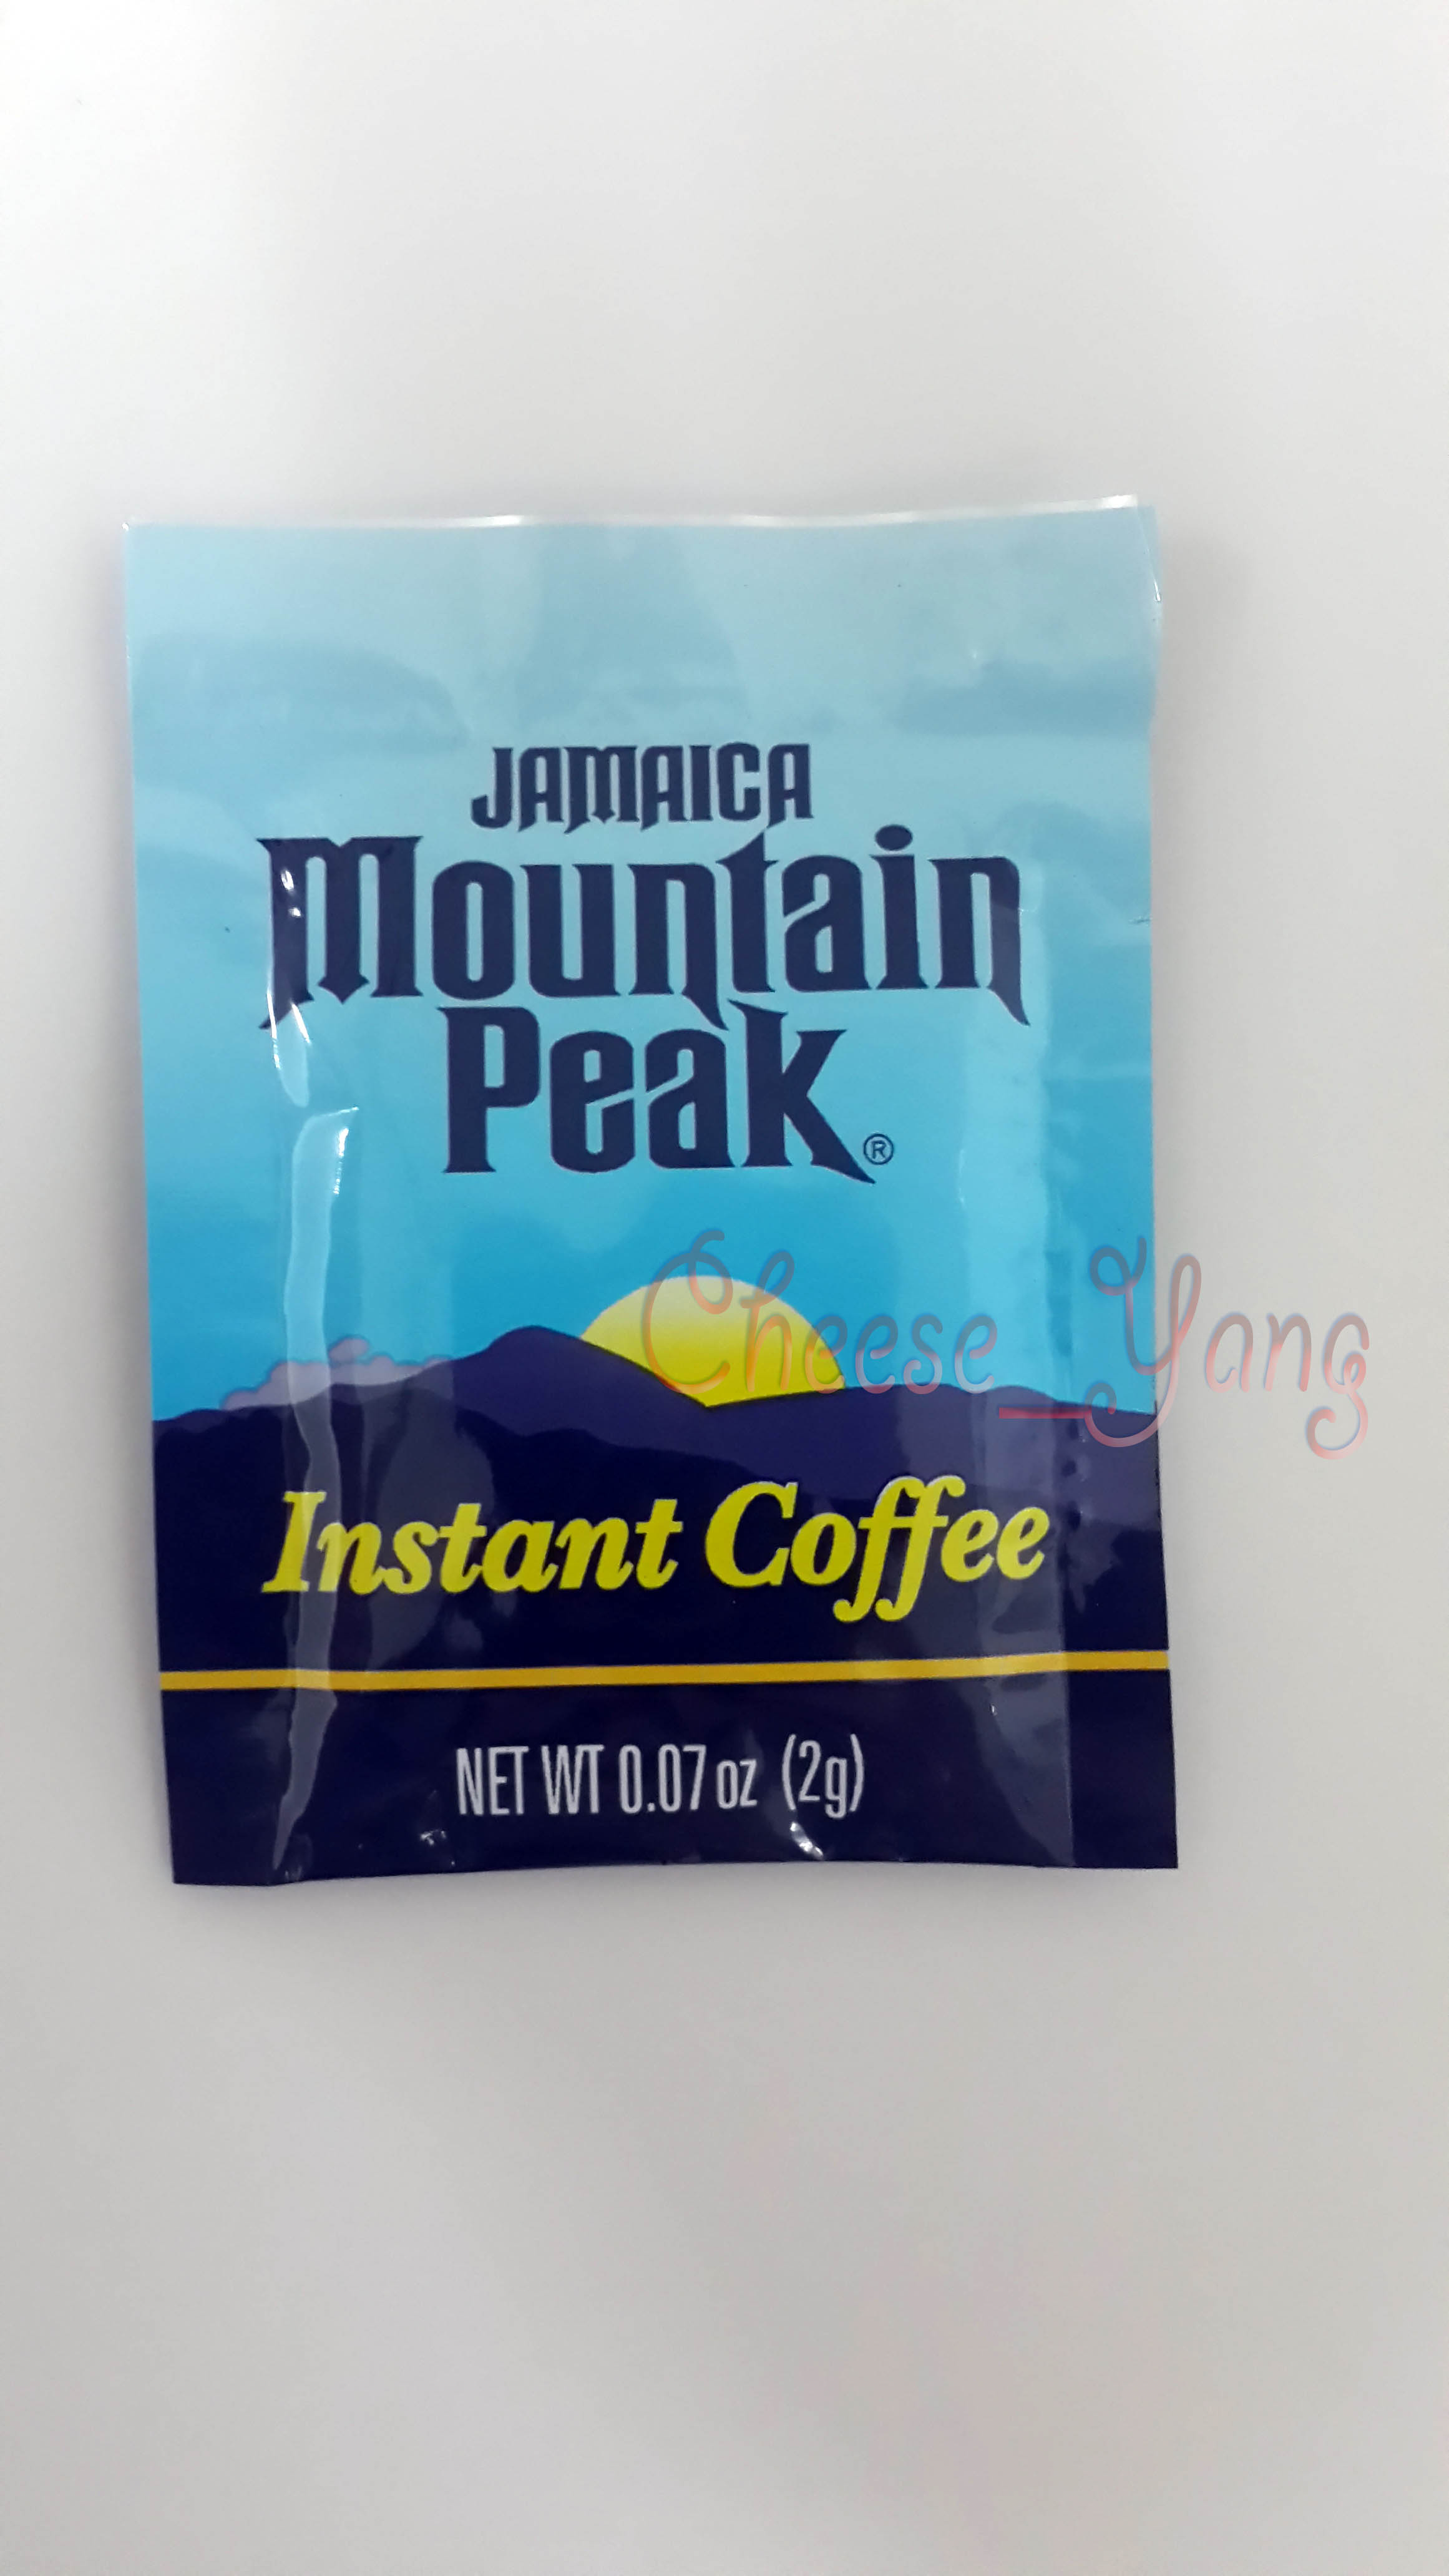 牙买加进口 摩品蓝山速溶咖啡黑咖啡进口无糖无奶纯咖啡 单包2g装